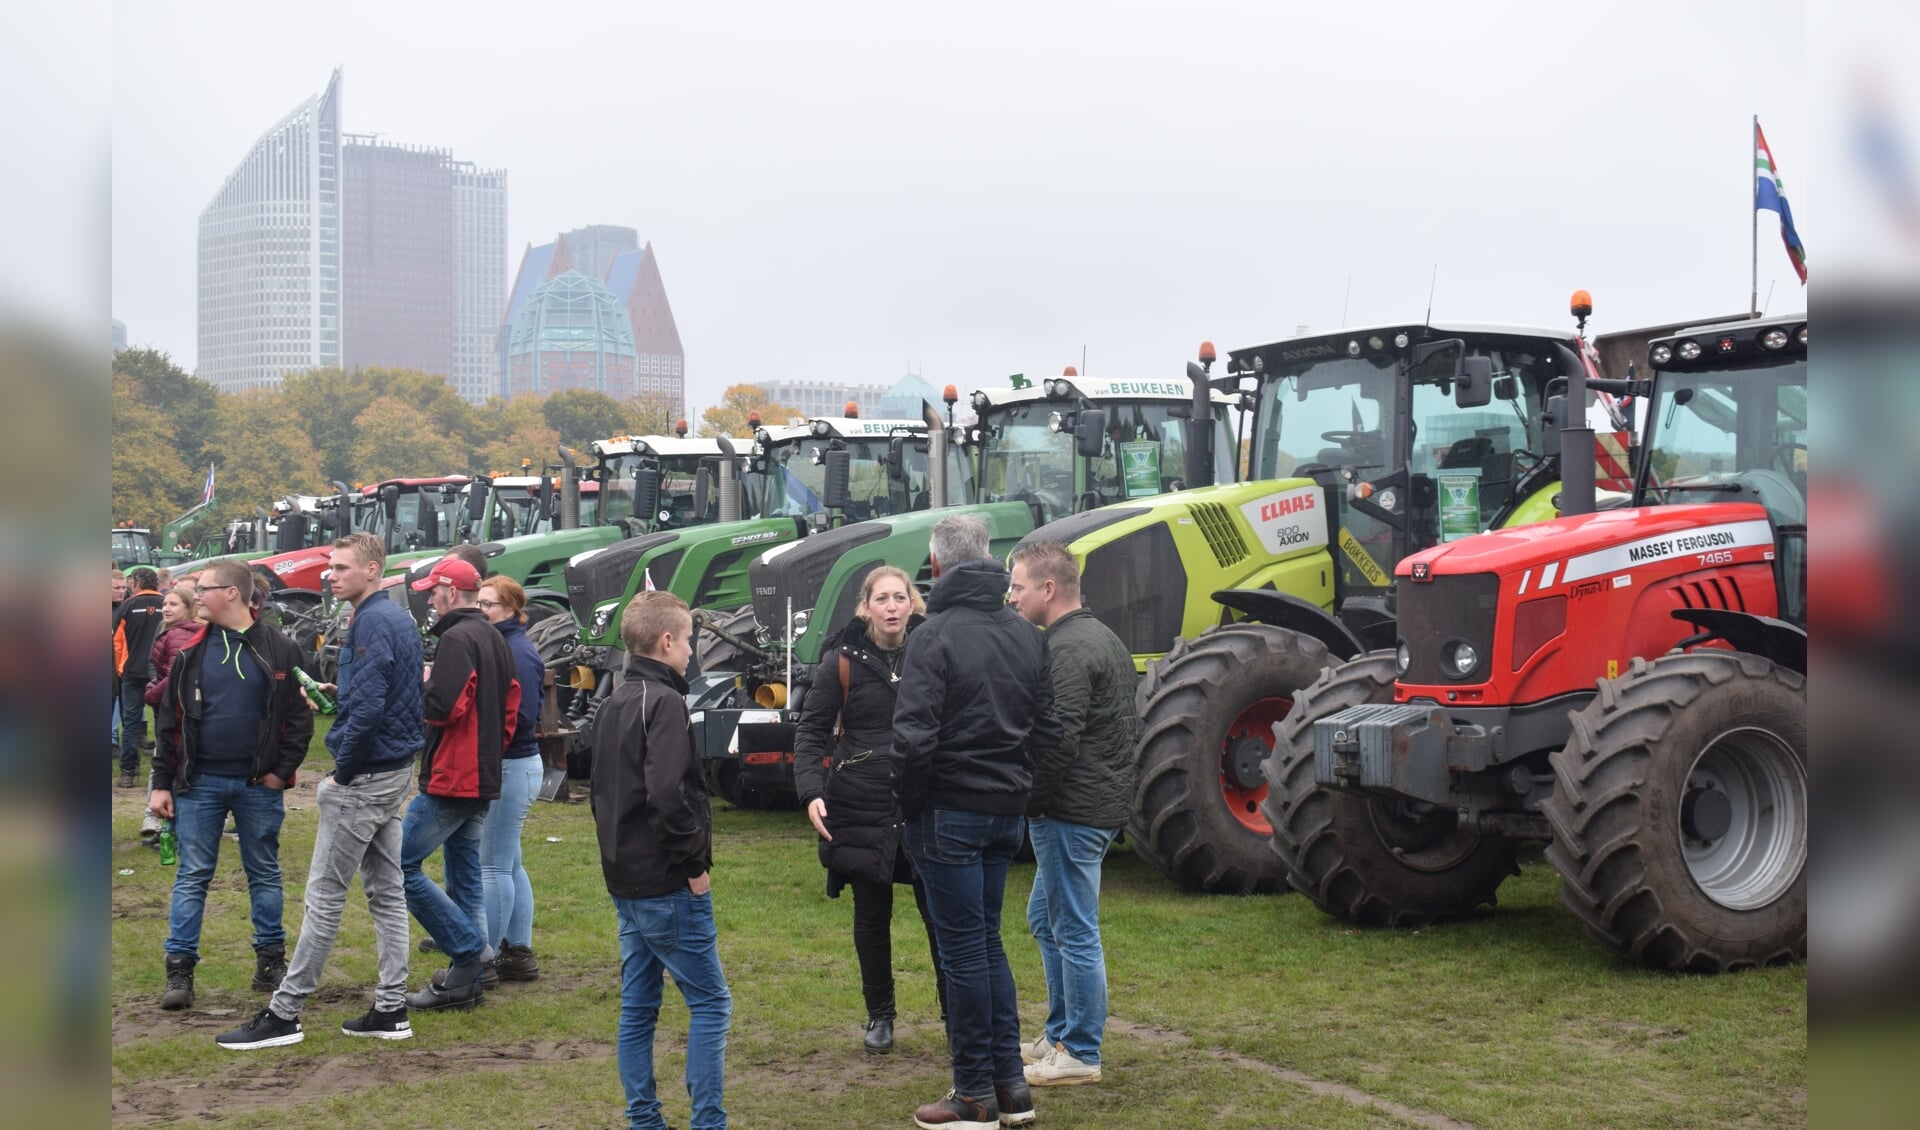 Deze week waren er nieuwe boerenprotesten, waaronder vandaag op het Malieveld in Den Haag. (foto en tekst: Myriam Dijck)